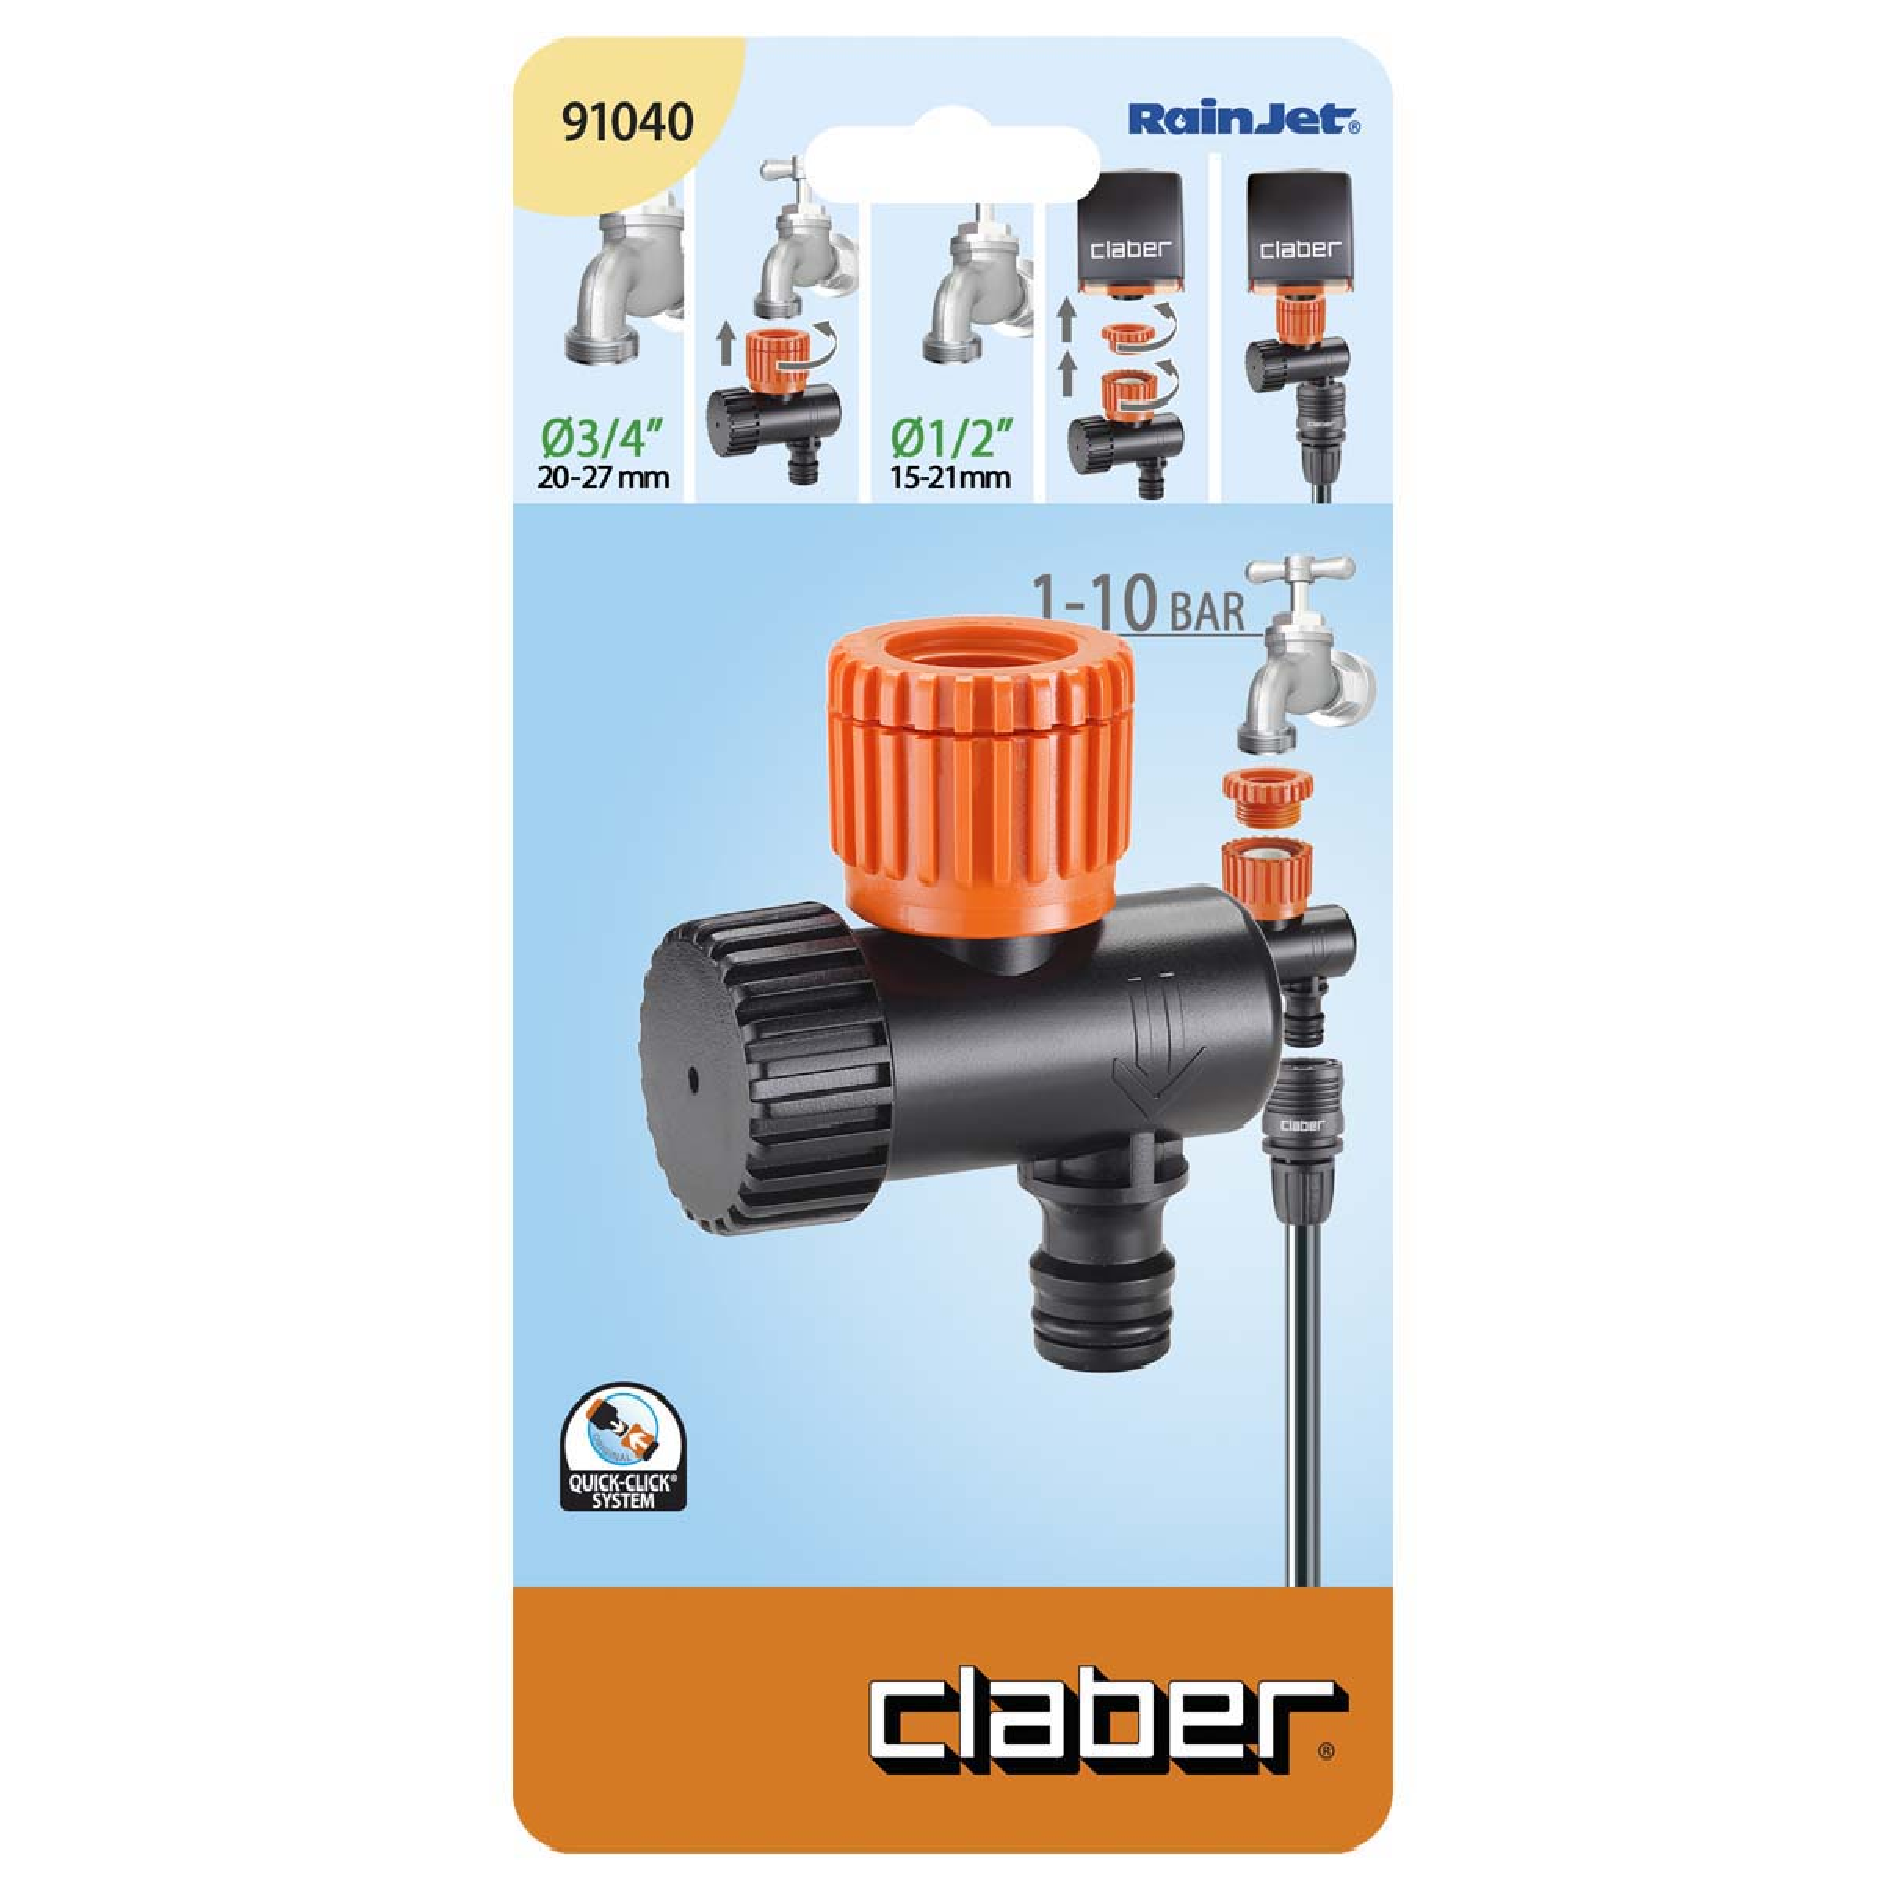 Claber 91040 Pressure Reducer